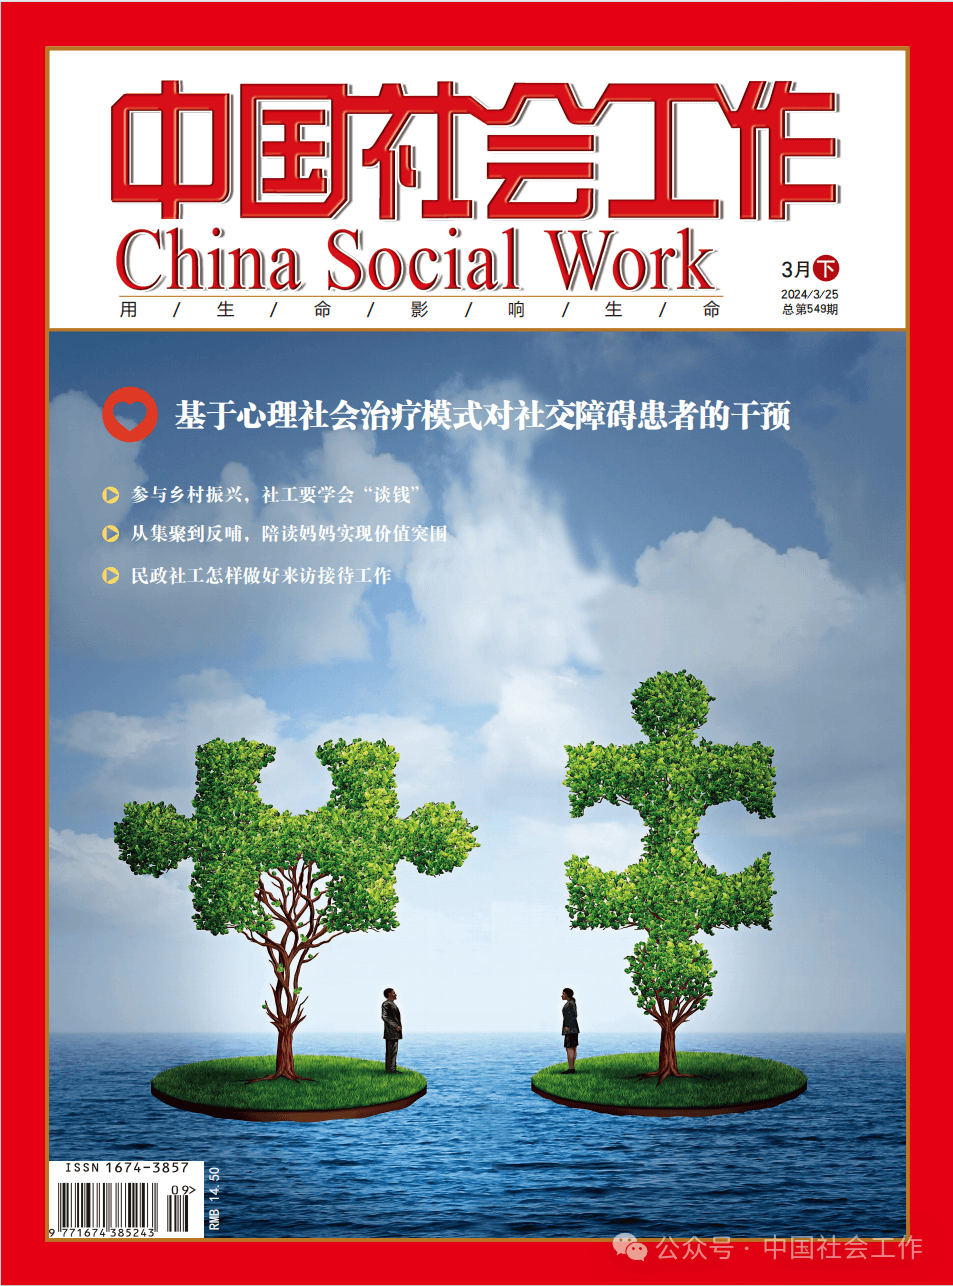 新刊丨《中国社会工作》3月下刊目录